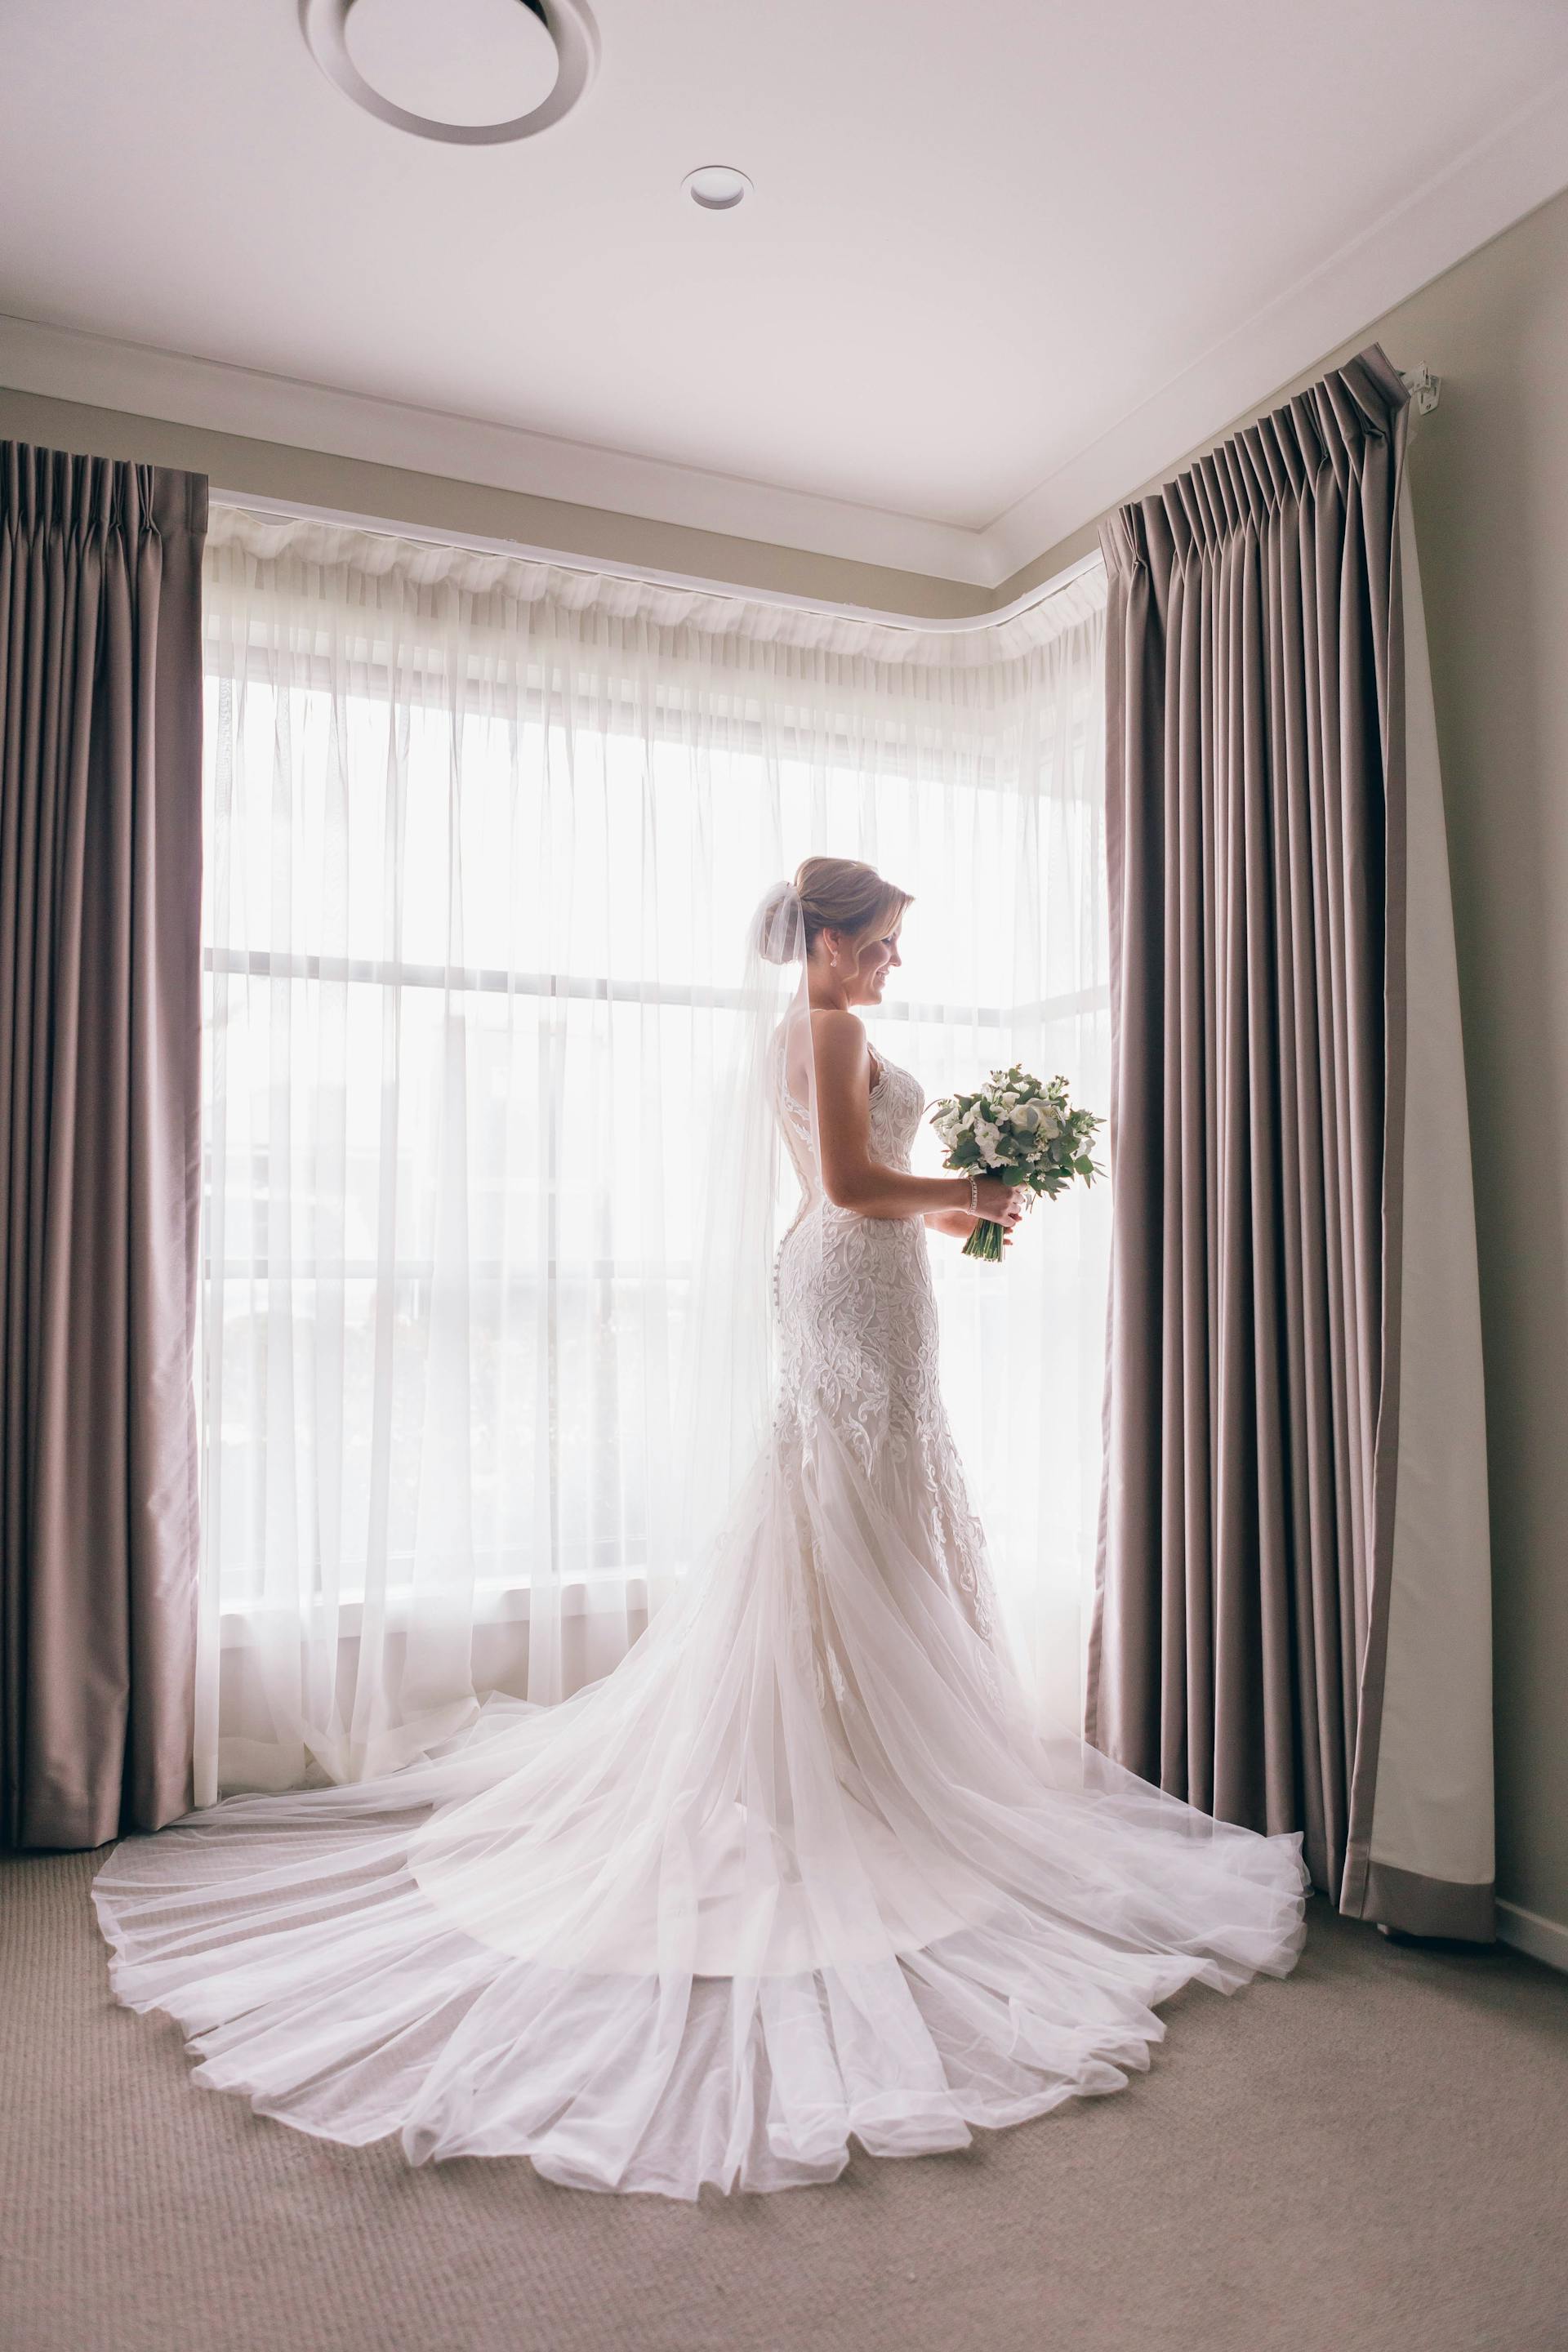 Une mariée dans sa robe de mariage | Source : Pexels